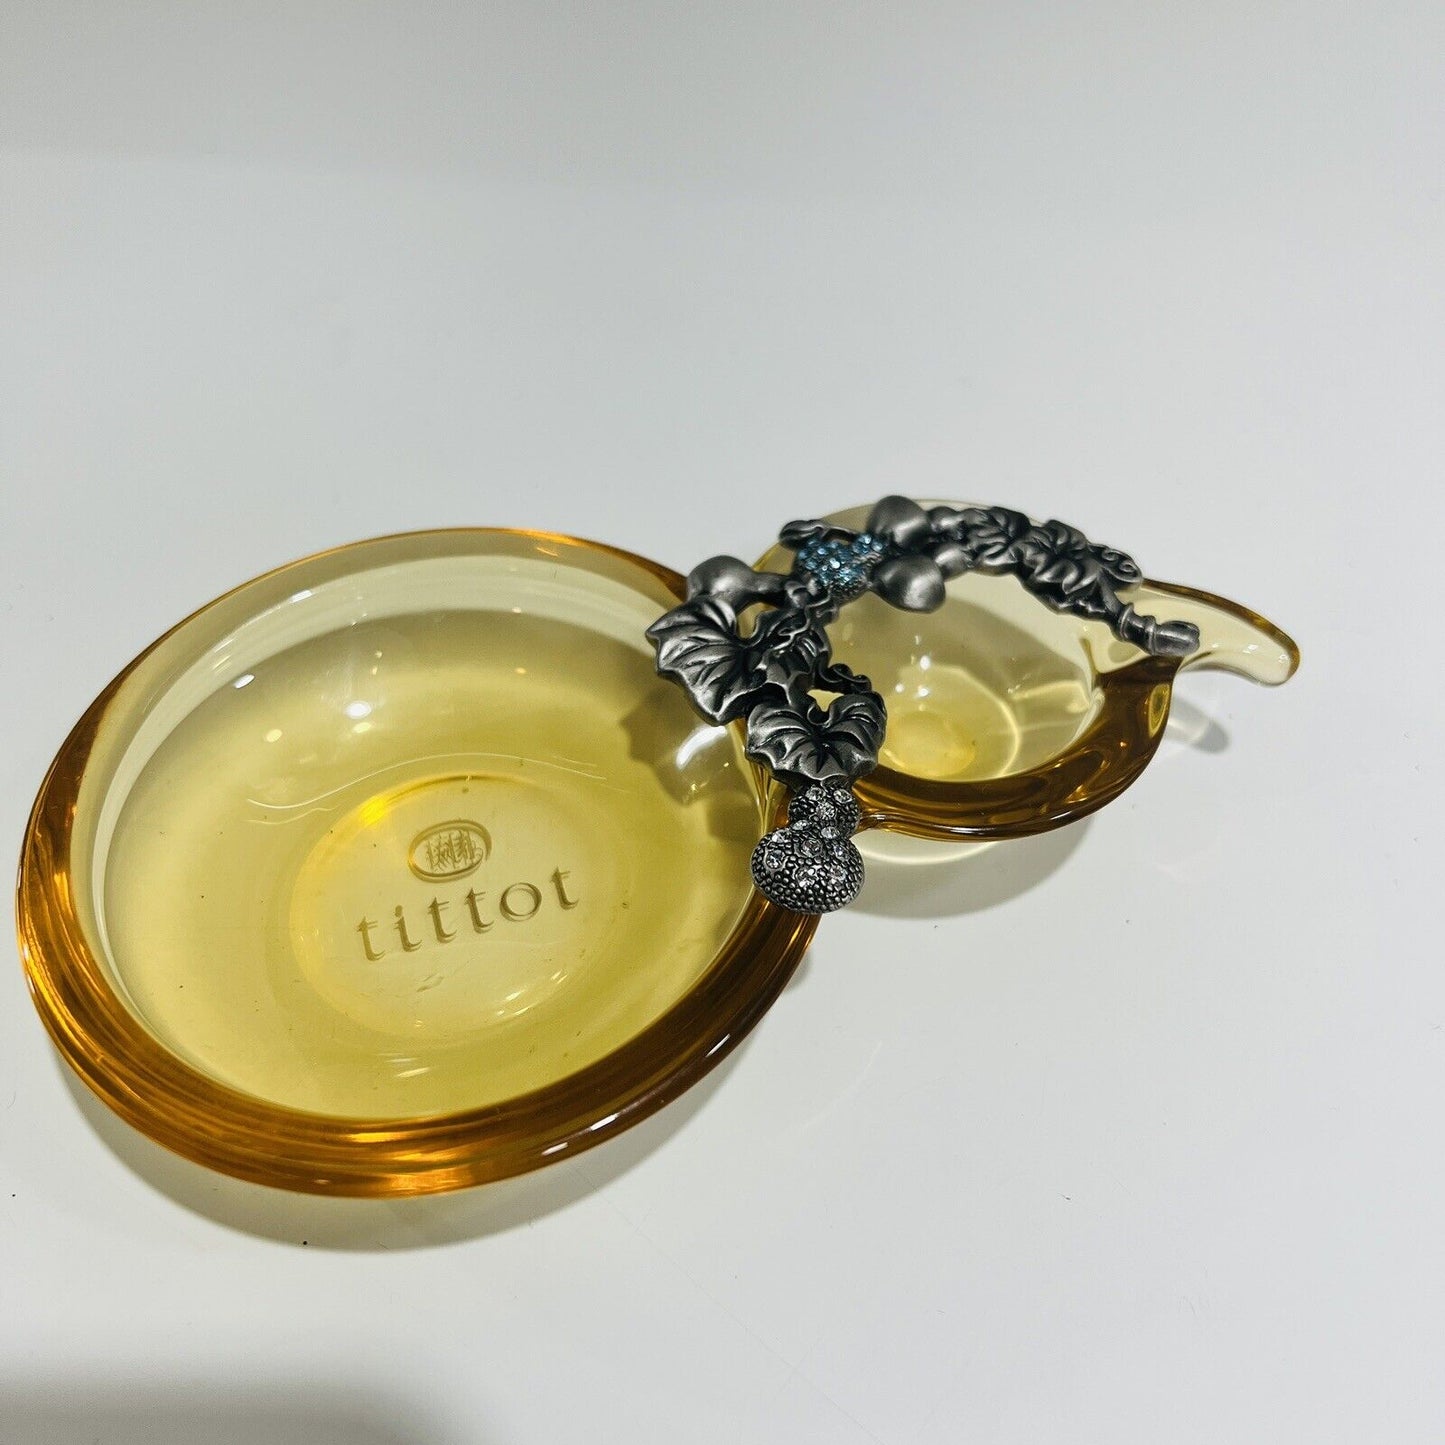 TiTToT Pear Dish Glass Plentiful Harvest Amber Decorative Metal Trinket Taiwan